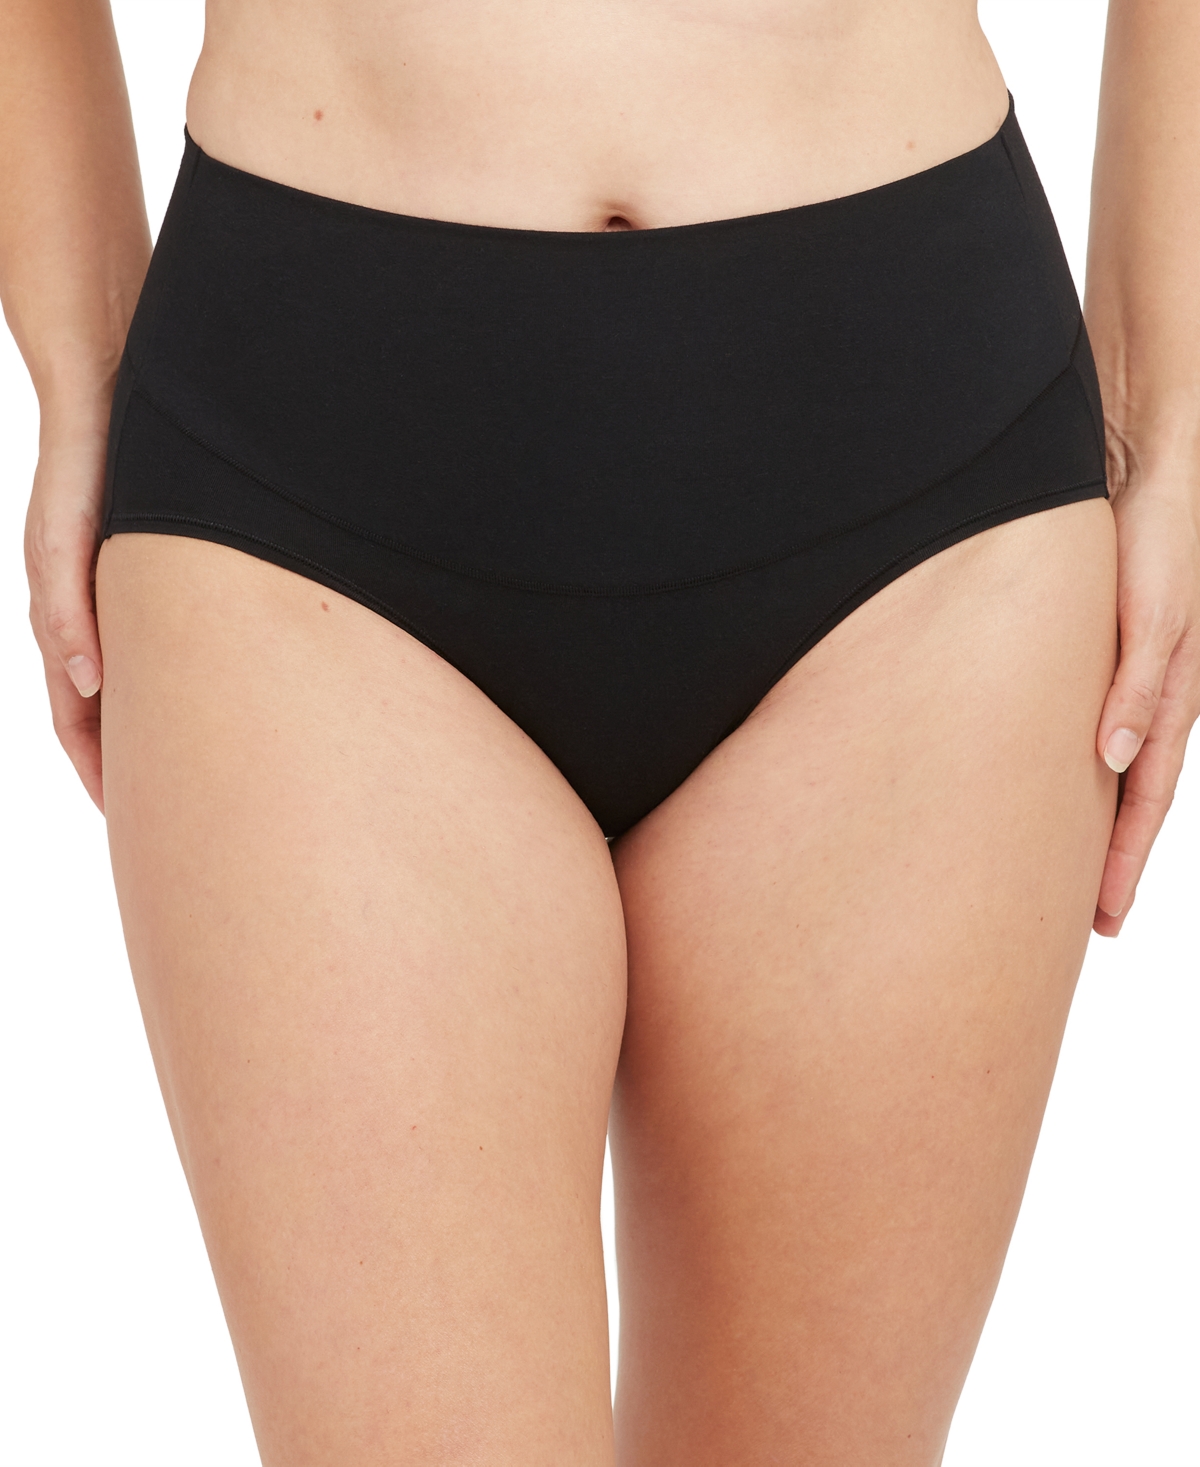 Spanx Women's Cotton Comfort Tummy Shaping Brief Underwear